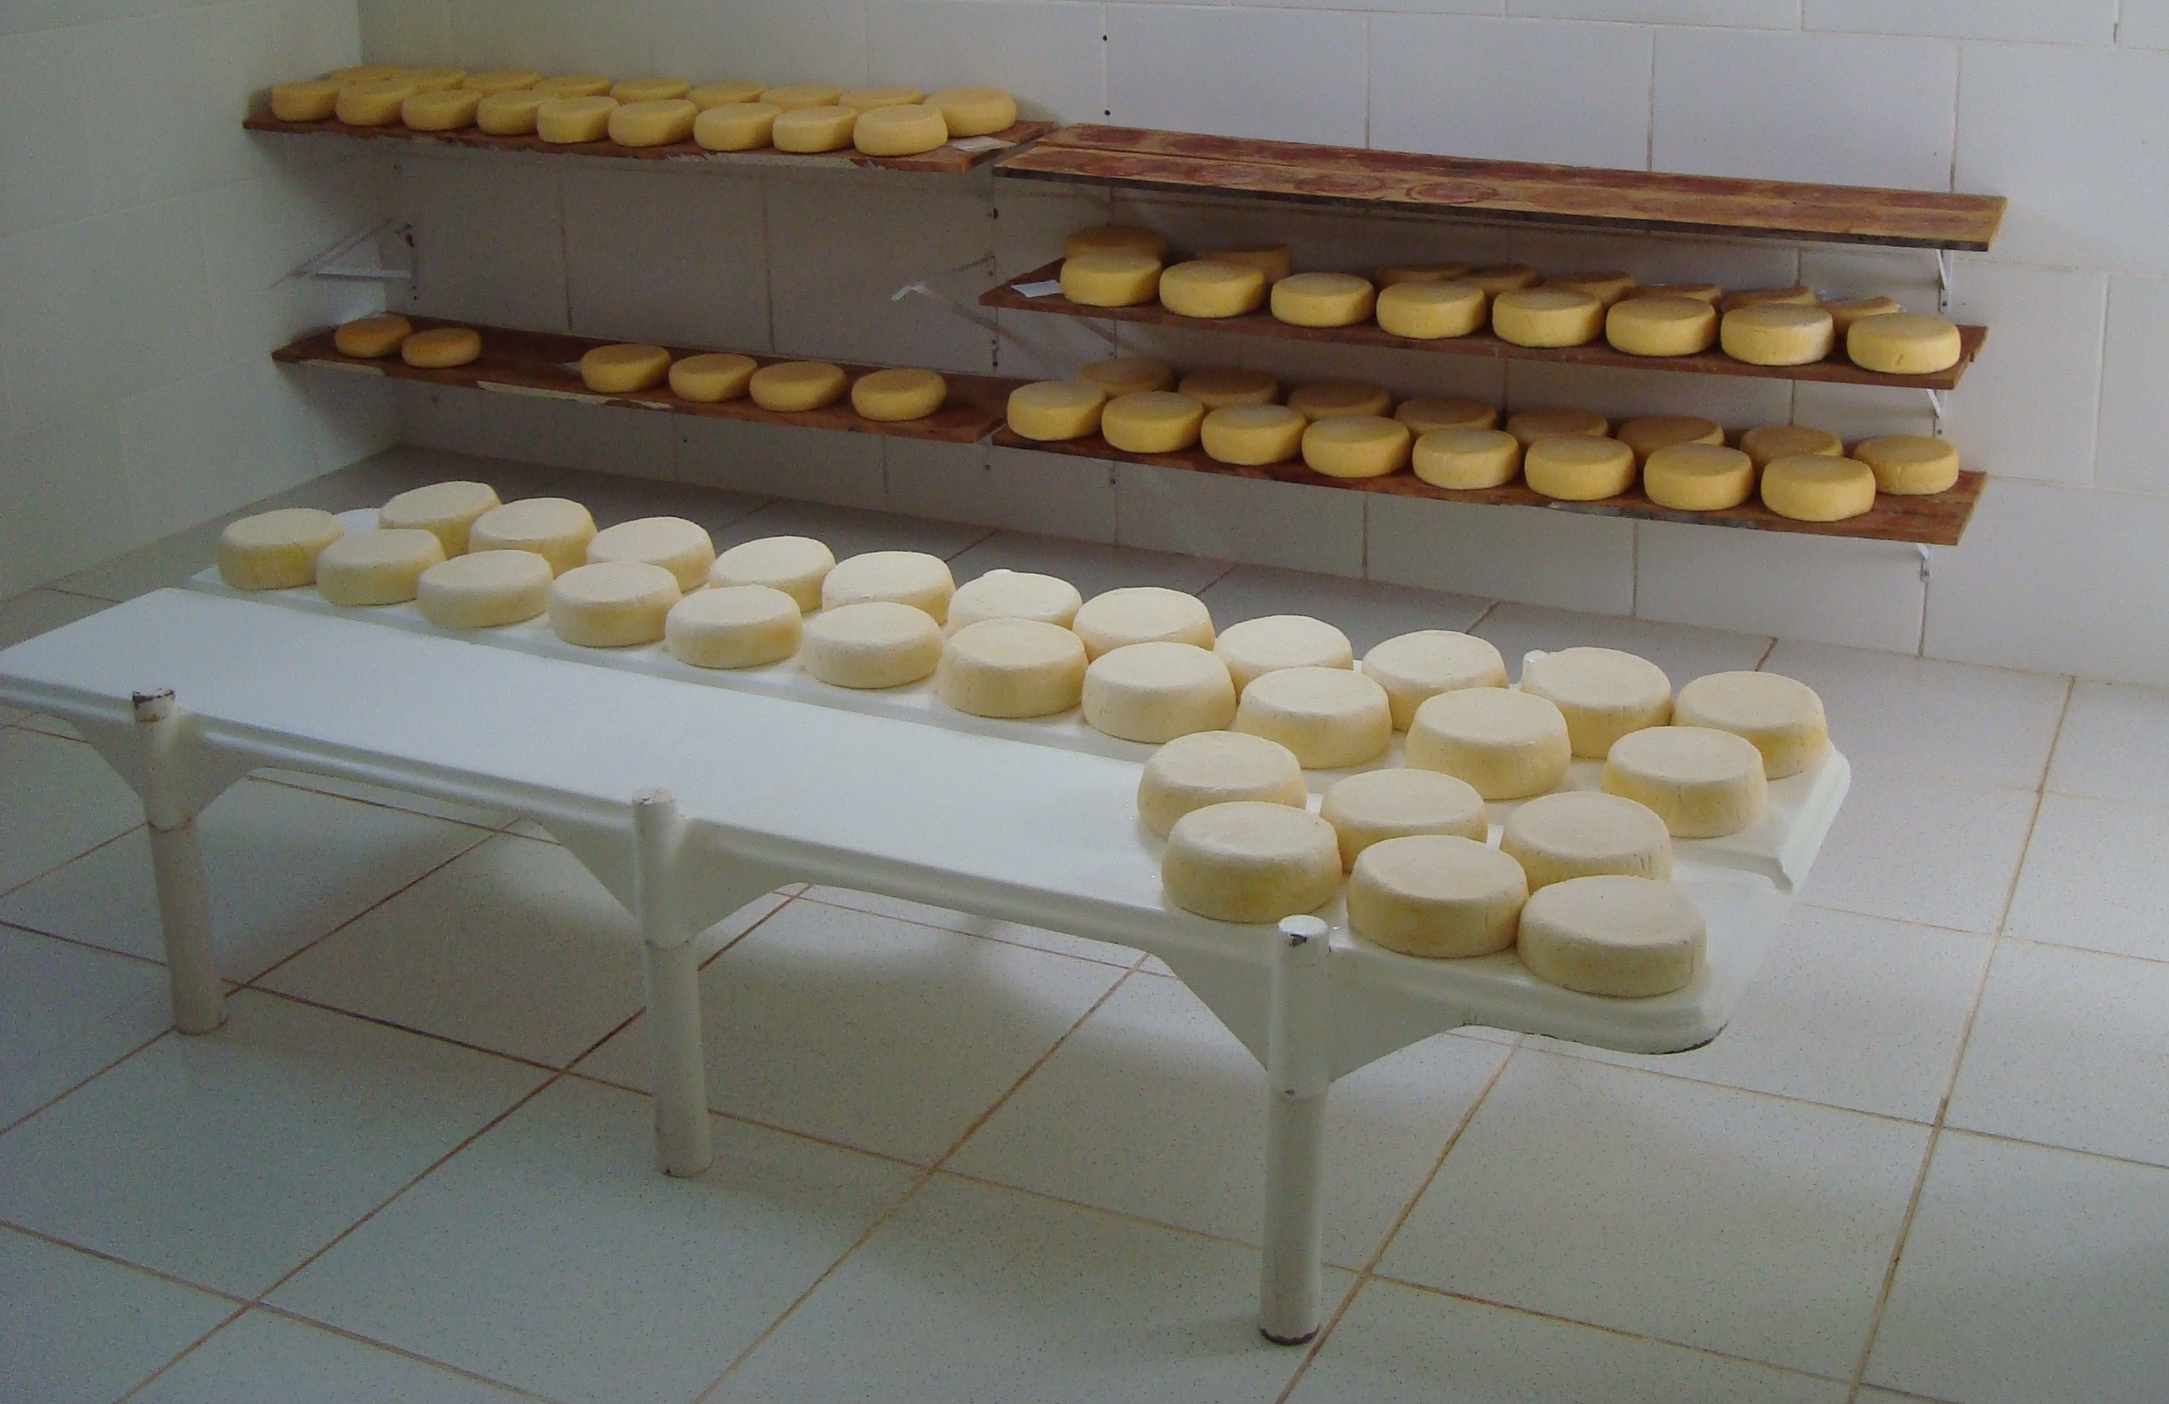 7808 - Queijaria em Tiradentes investe em padronização na fabricação do queijo minas artesanal. Foto Lúcia Resende.jpg